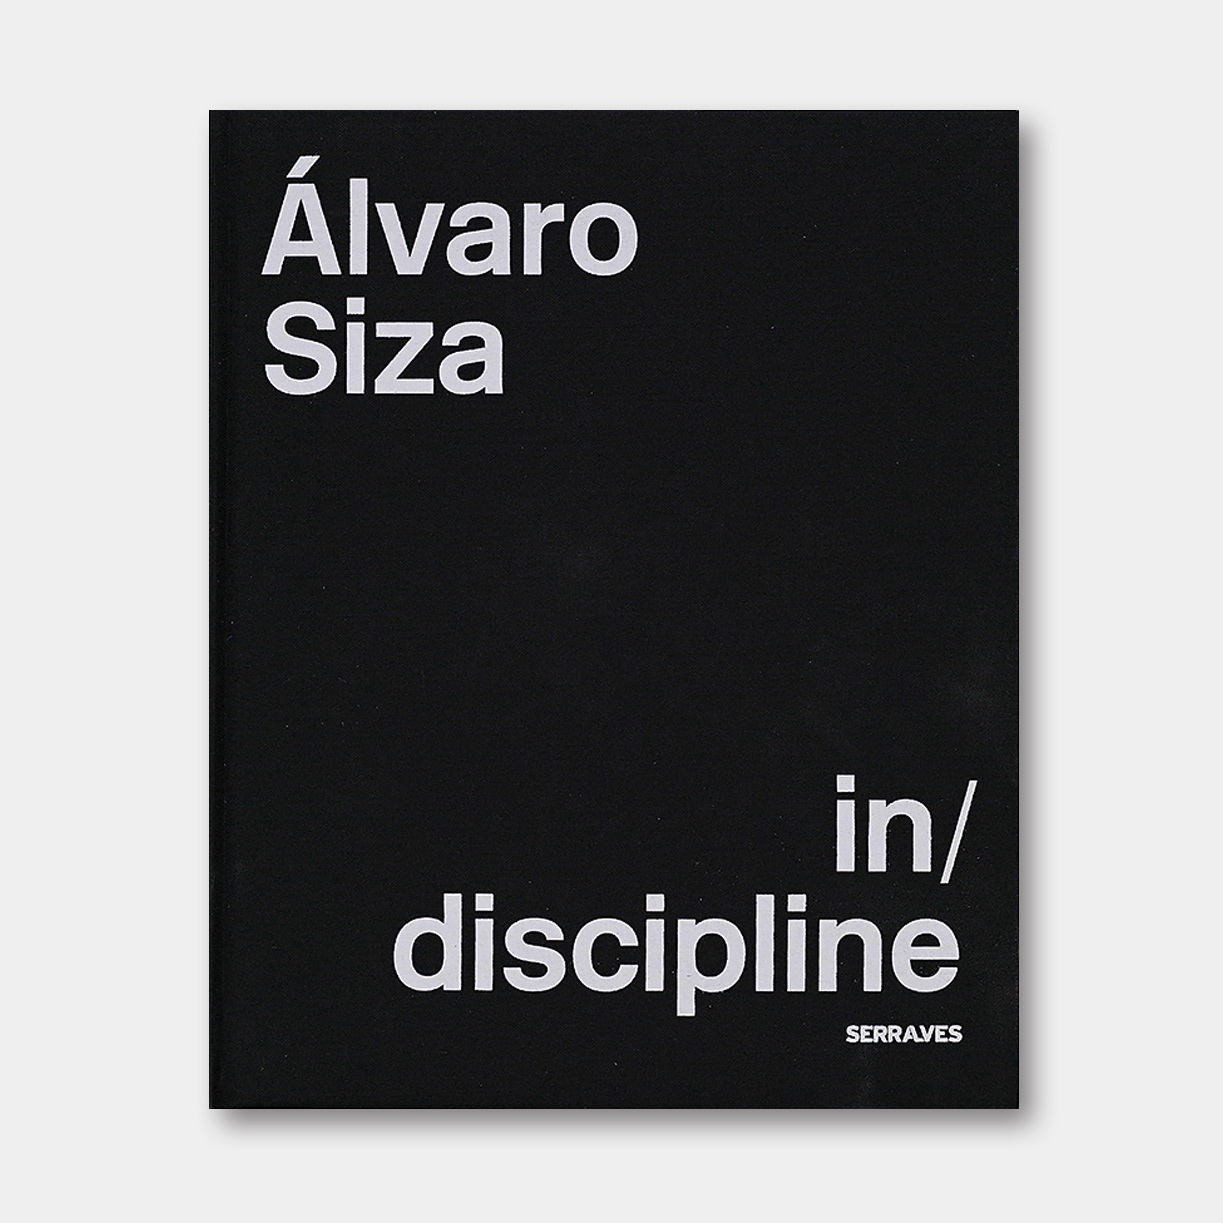 德国原版 | 阿尔瓦罗·西扎：在/学科中  Alvaro Siza in/discipline